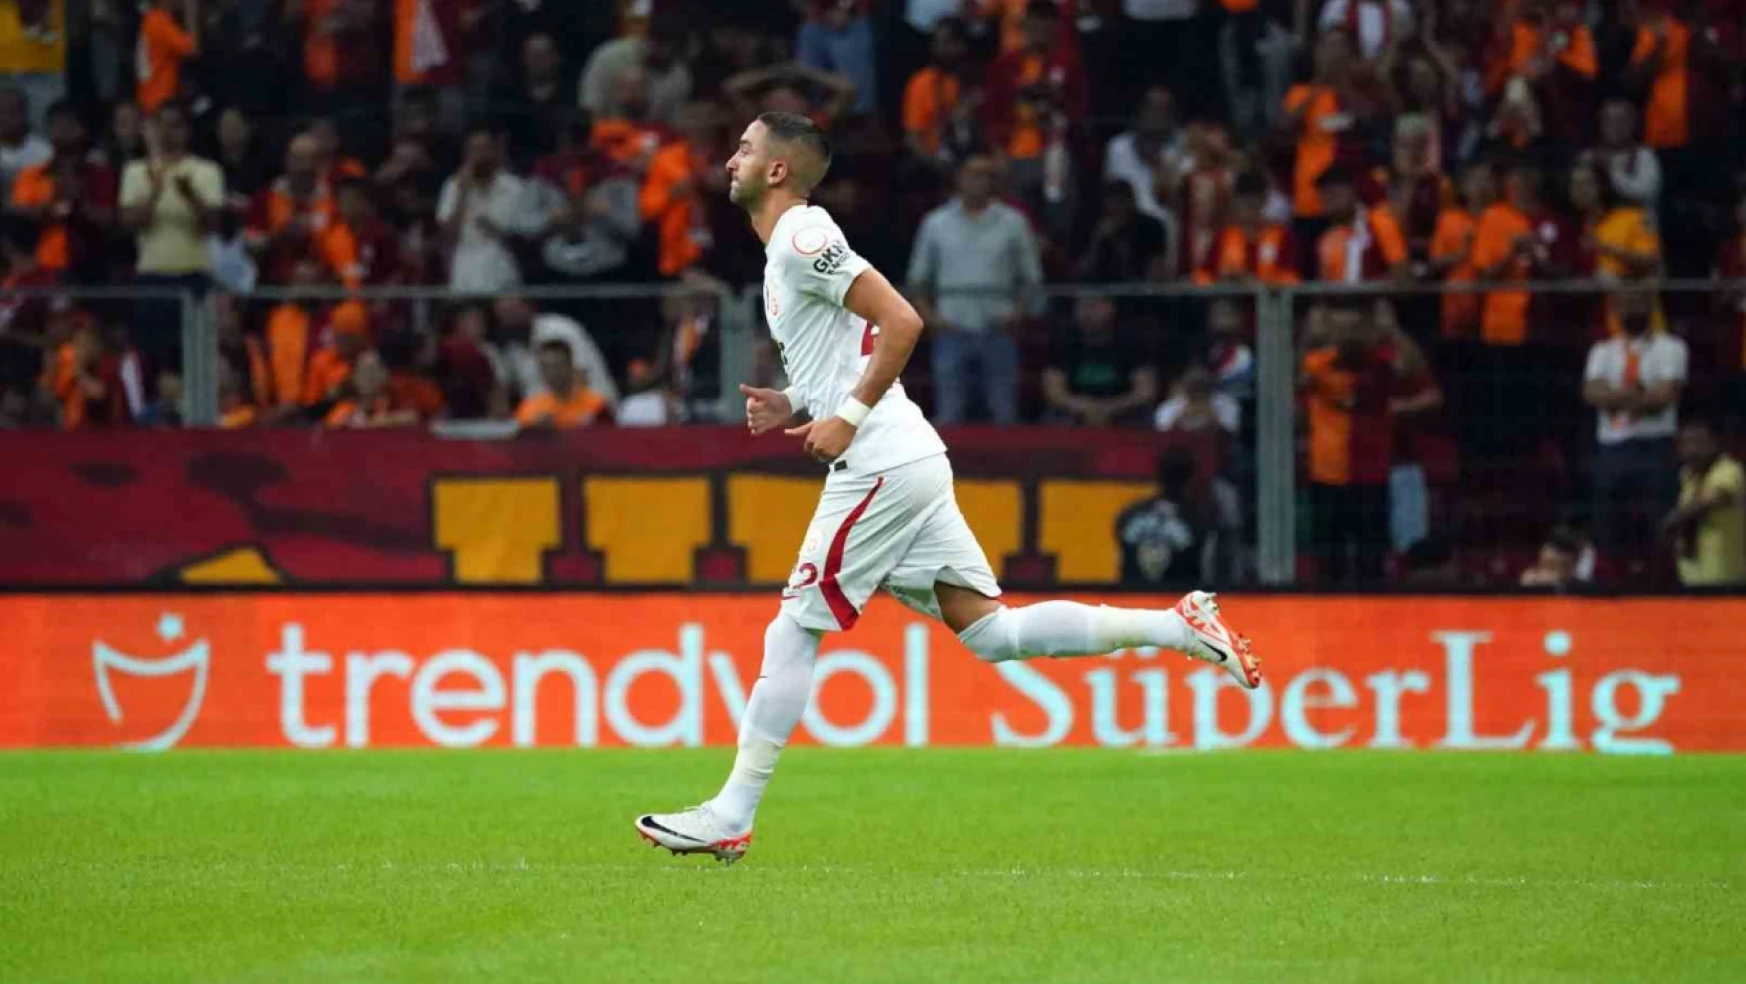 Trendyol Süper Lig: Galatasaray: 4 - Samsunspor: 2 (Maç sonucu)